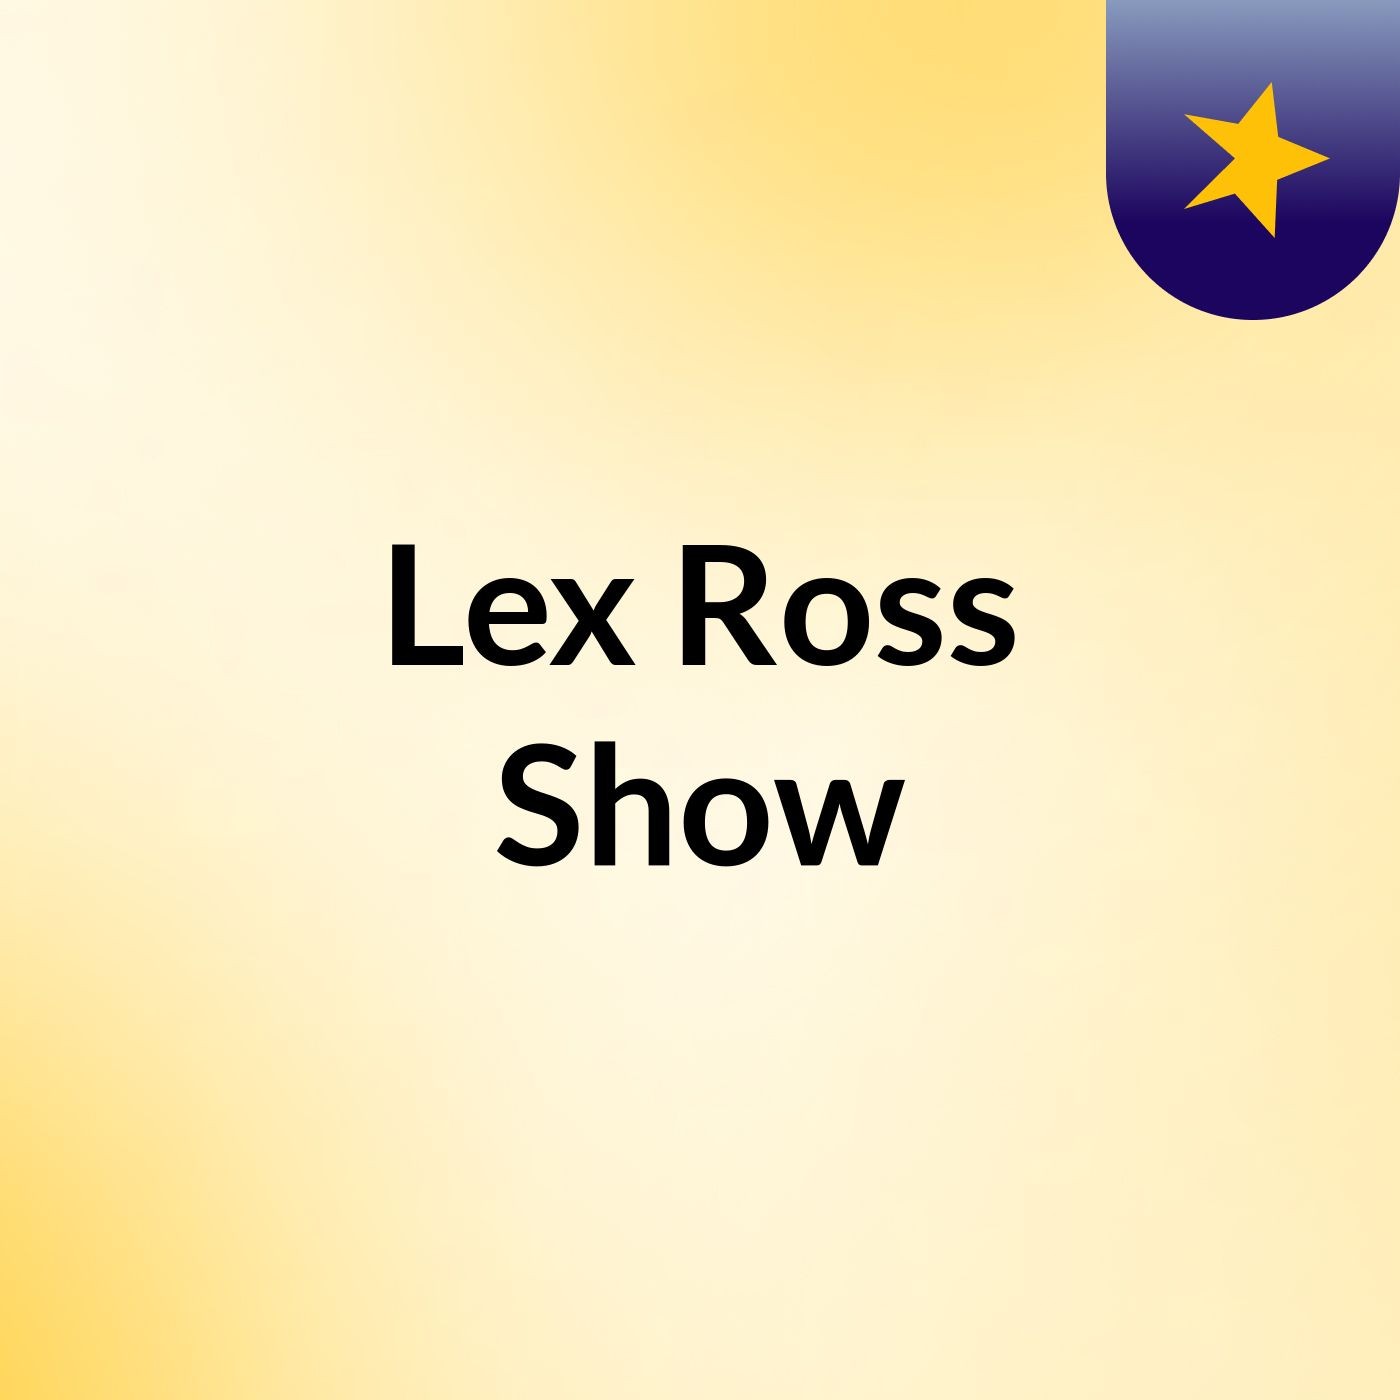 Lex Ross Show